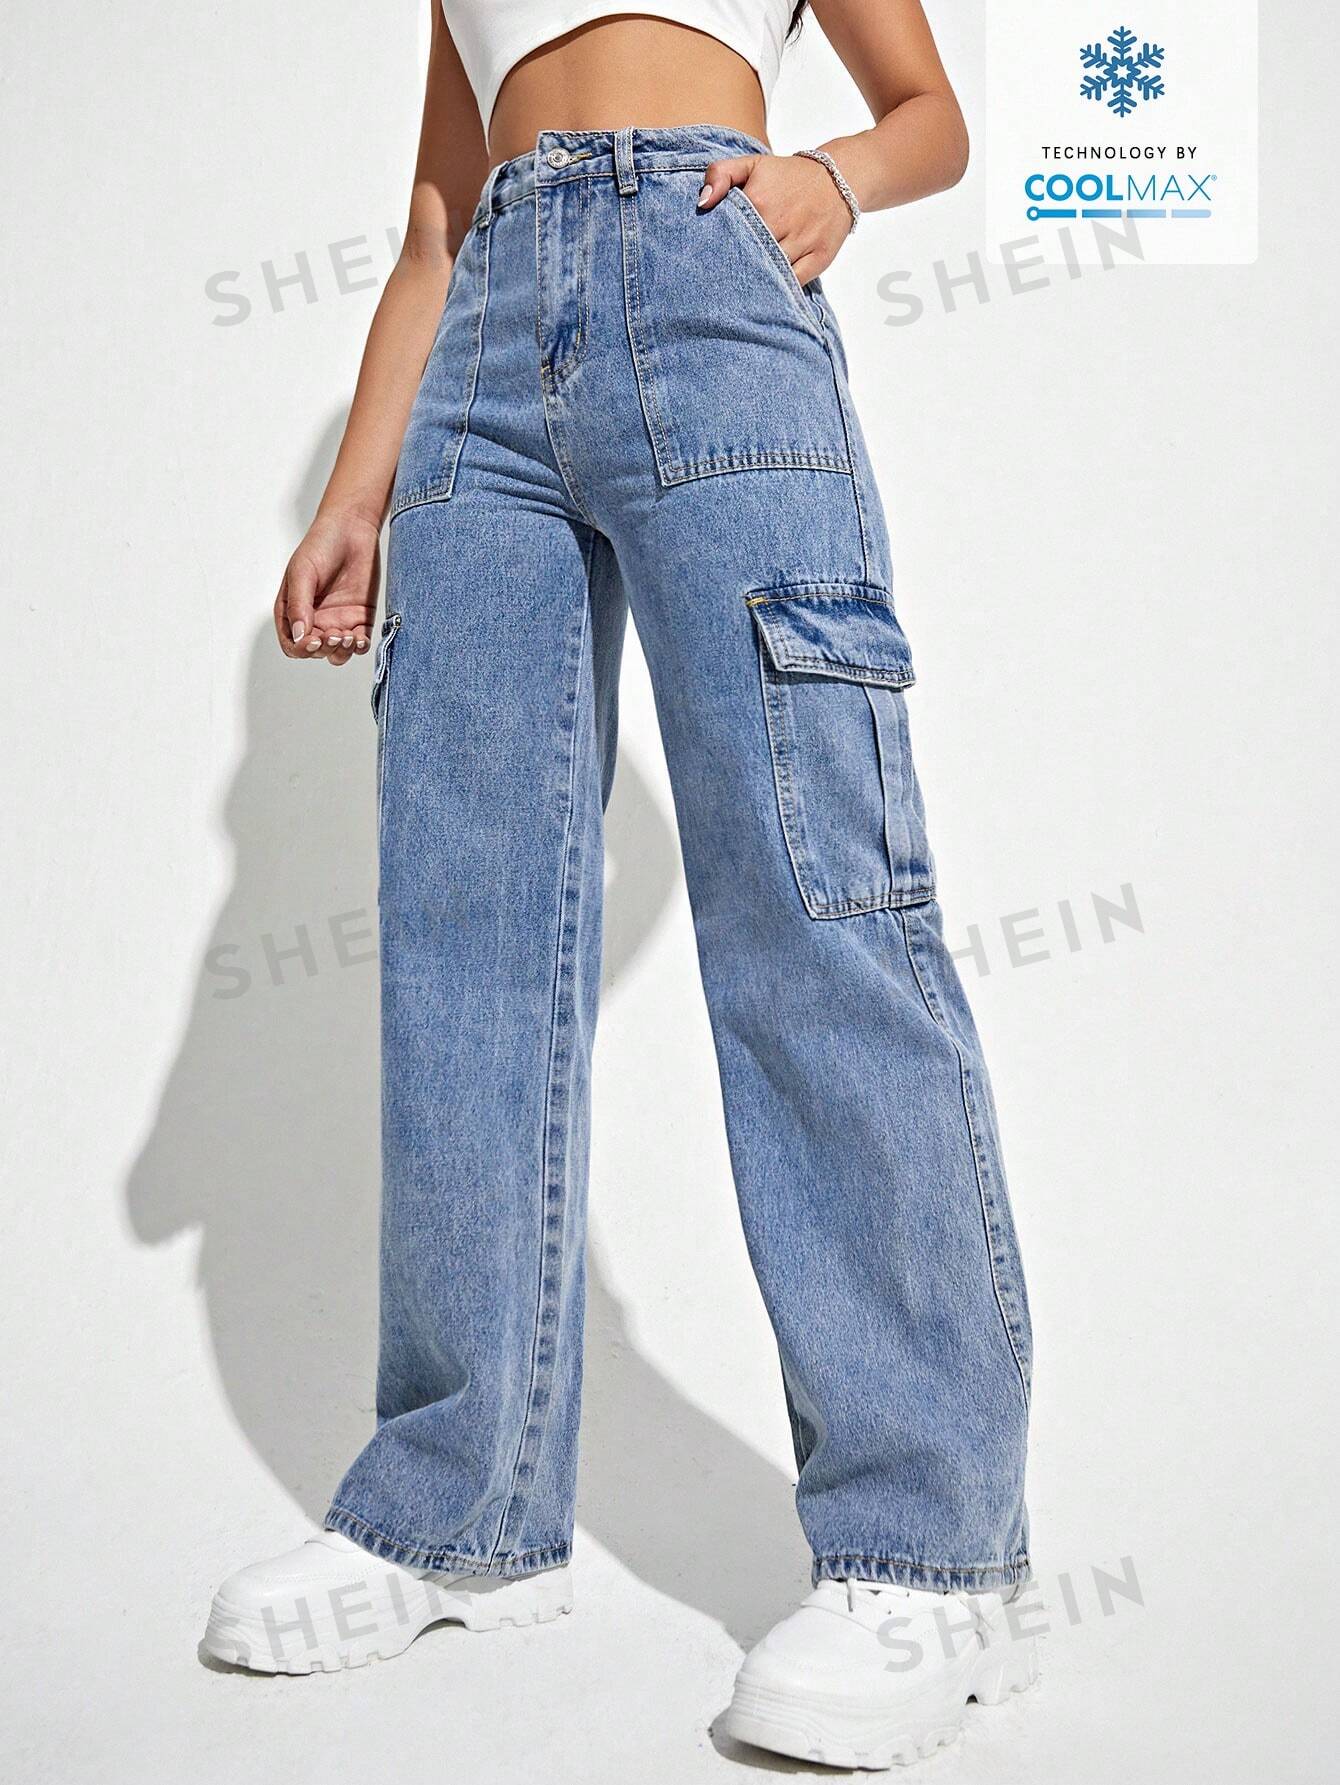 SHEIN Coolmax Джинсовые брюки с карманами и откидными карманами в стиле рабочей одежды, средняя стирка